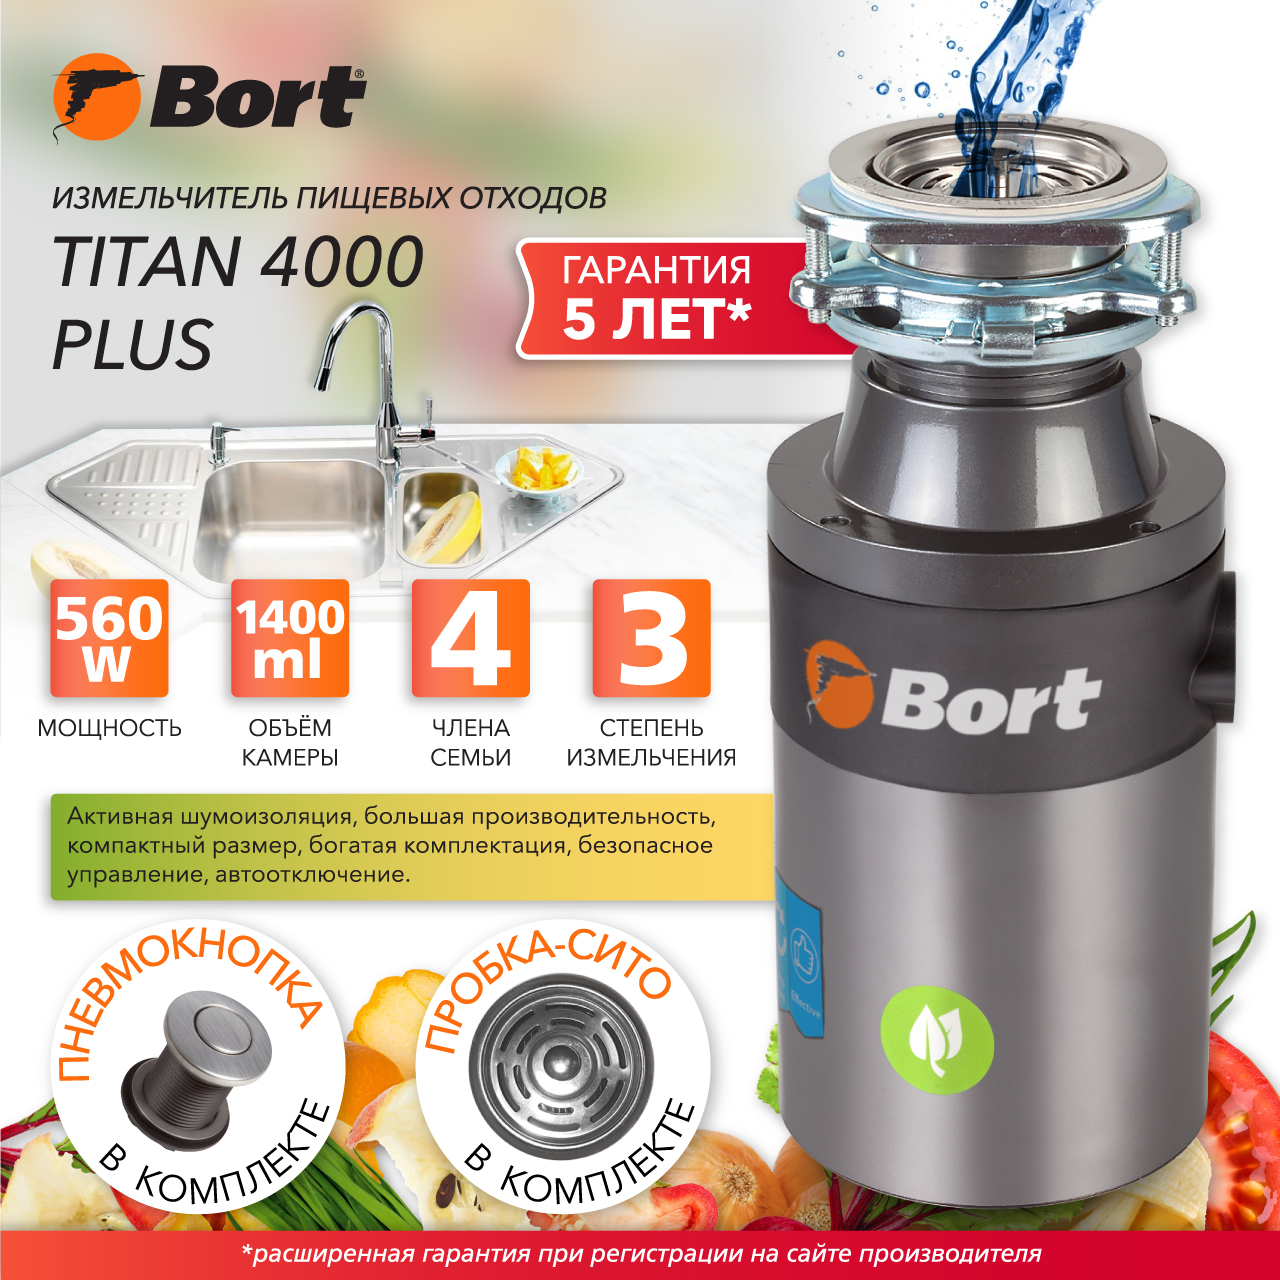 Измельчитель пищевых отходов Bort TITAN 4000 PLUS (91275776) серебристый измельчитель пищевых отходов bort titan max power fullcontrol 93410266 серебристый